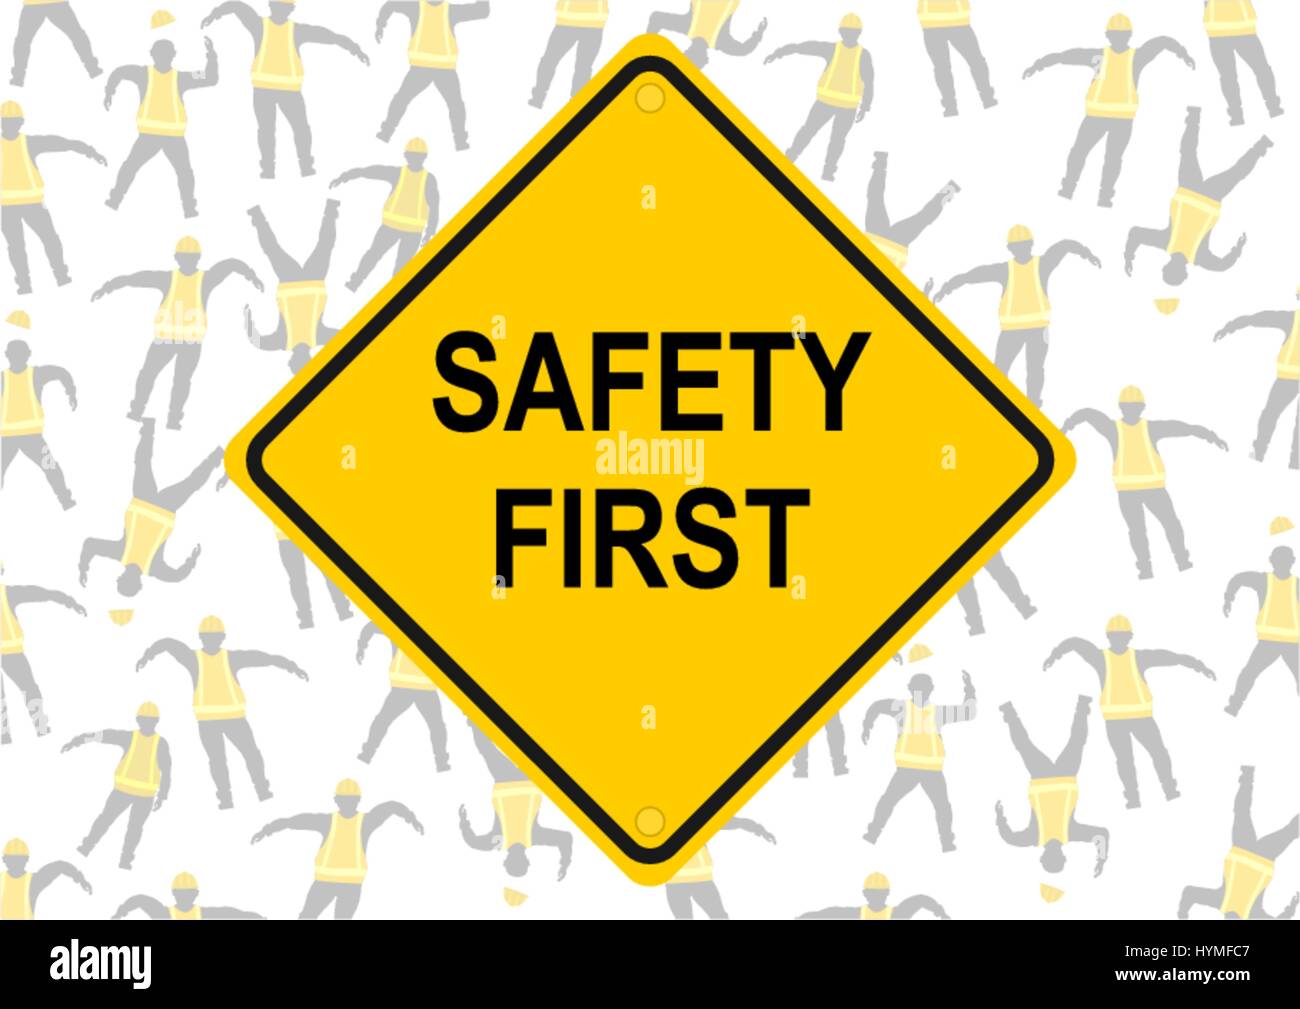 Safety first. Hintergrund der Zeichen in gelben Westen. flachbild Vektor. Stock Vektor